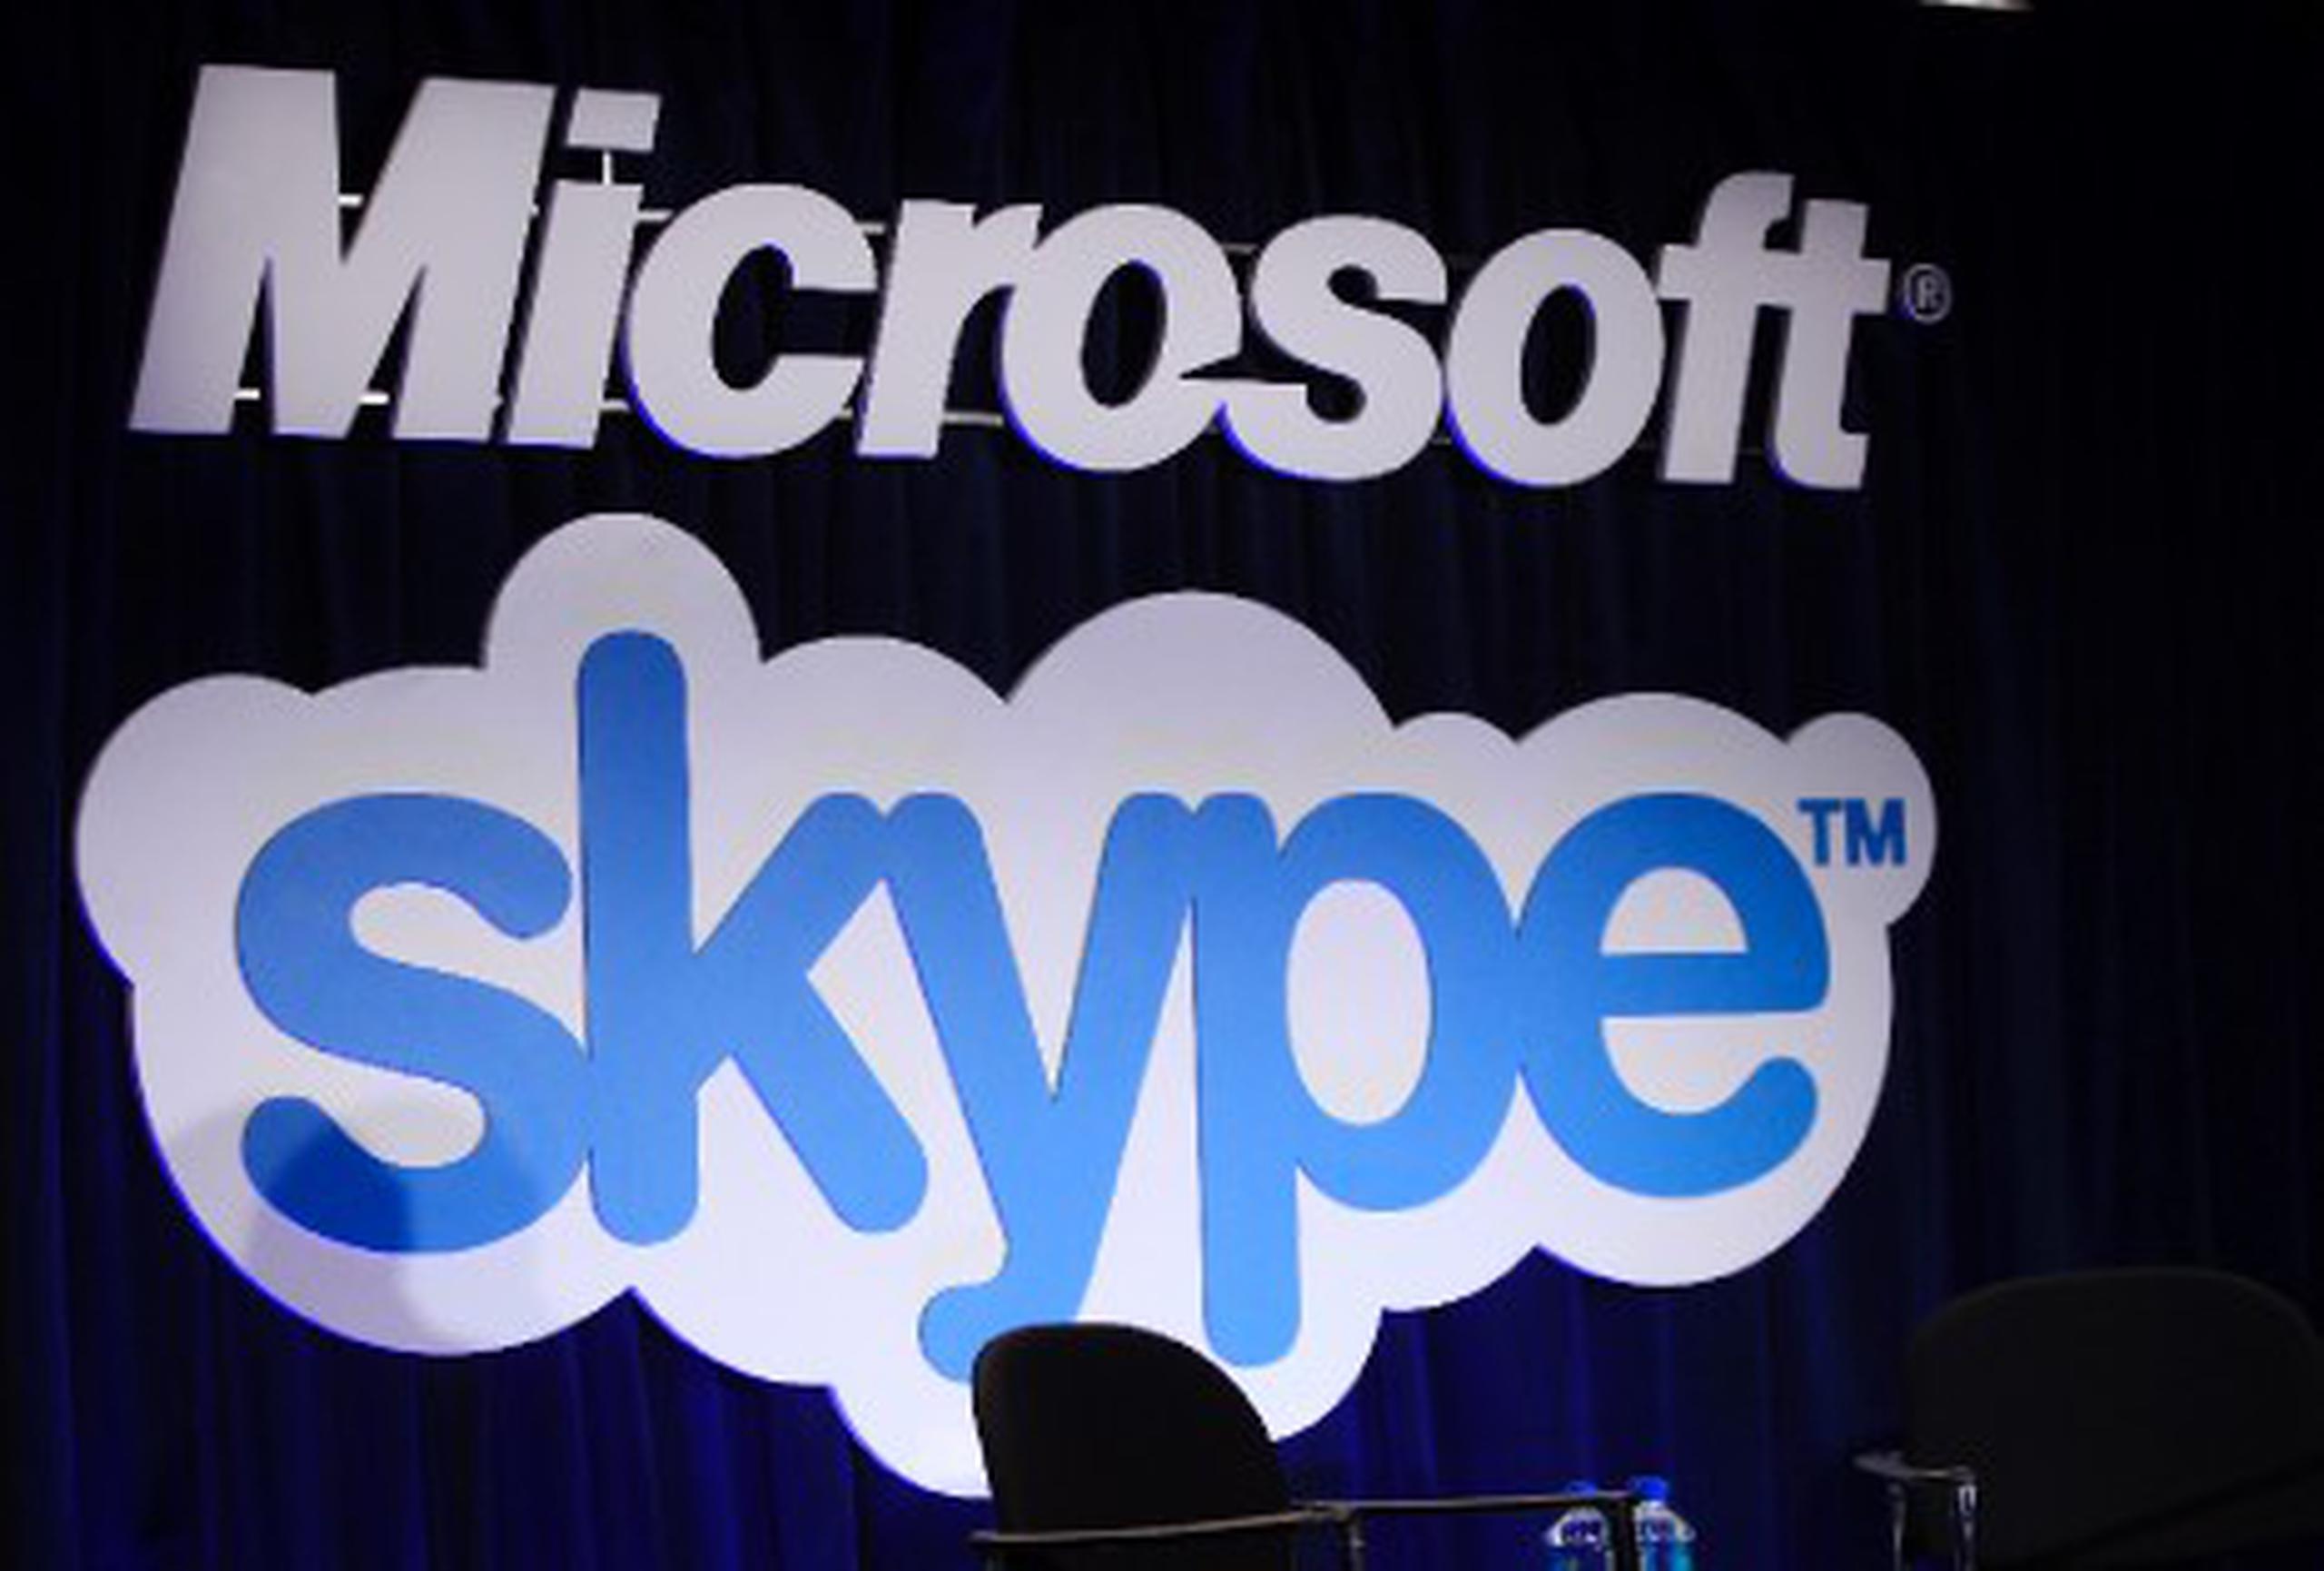 Como parte de la integración, Skype sincronizó los contactos, información y mensajes en línea dentro de Outlook. (Archivo)